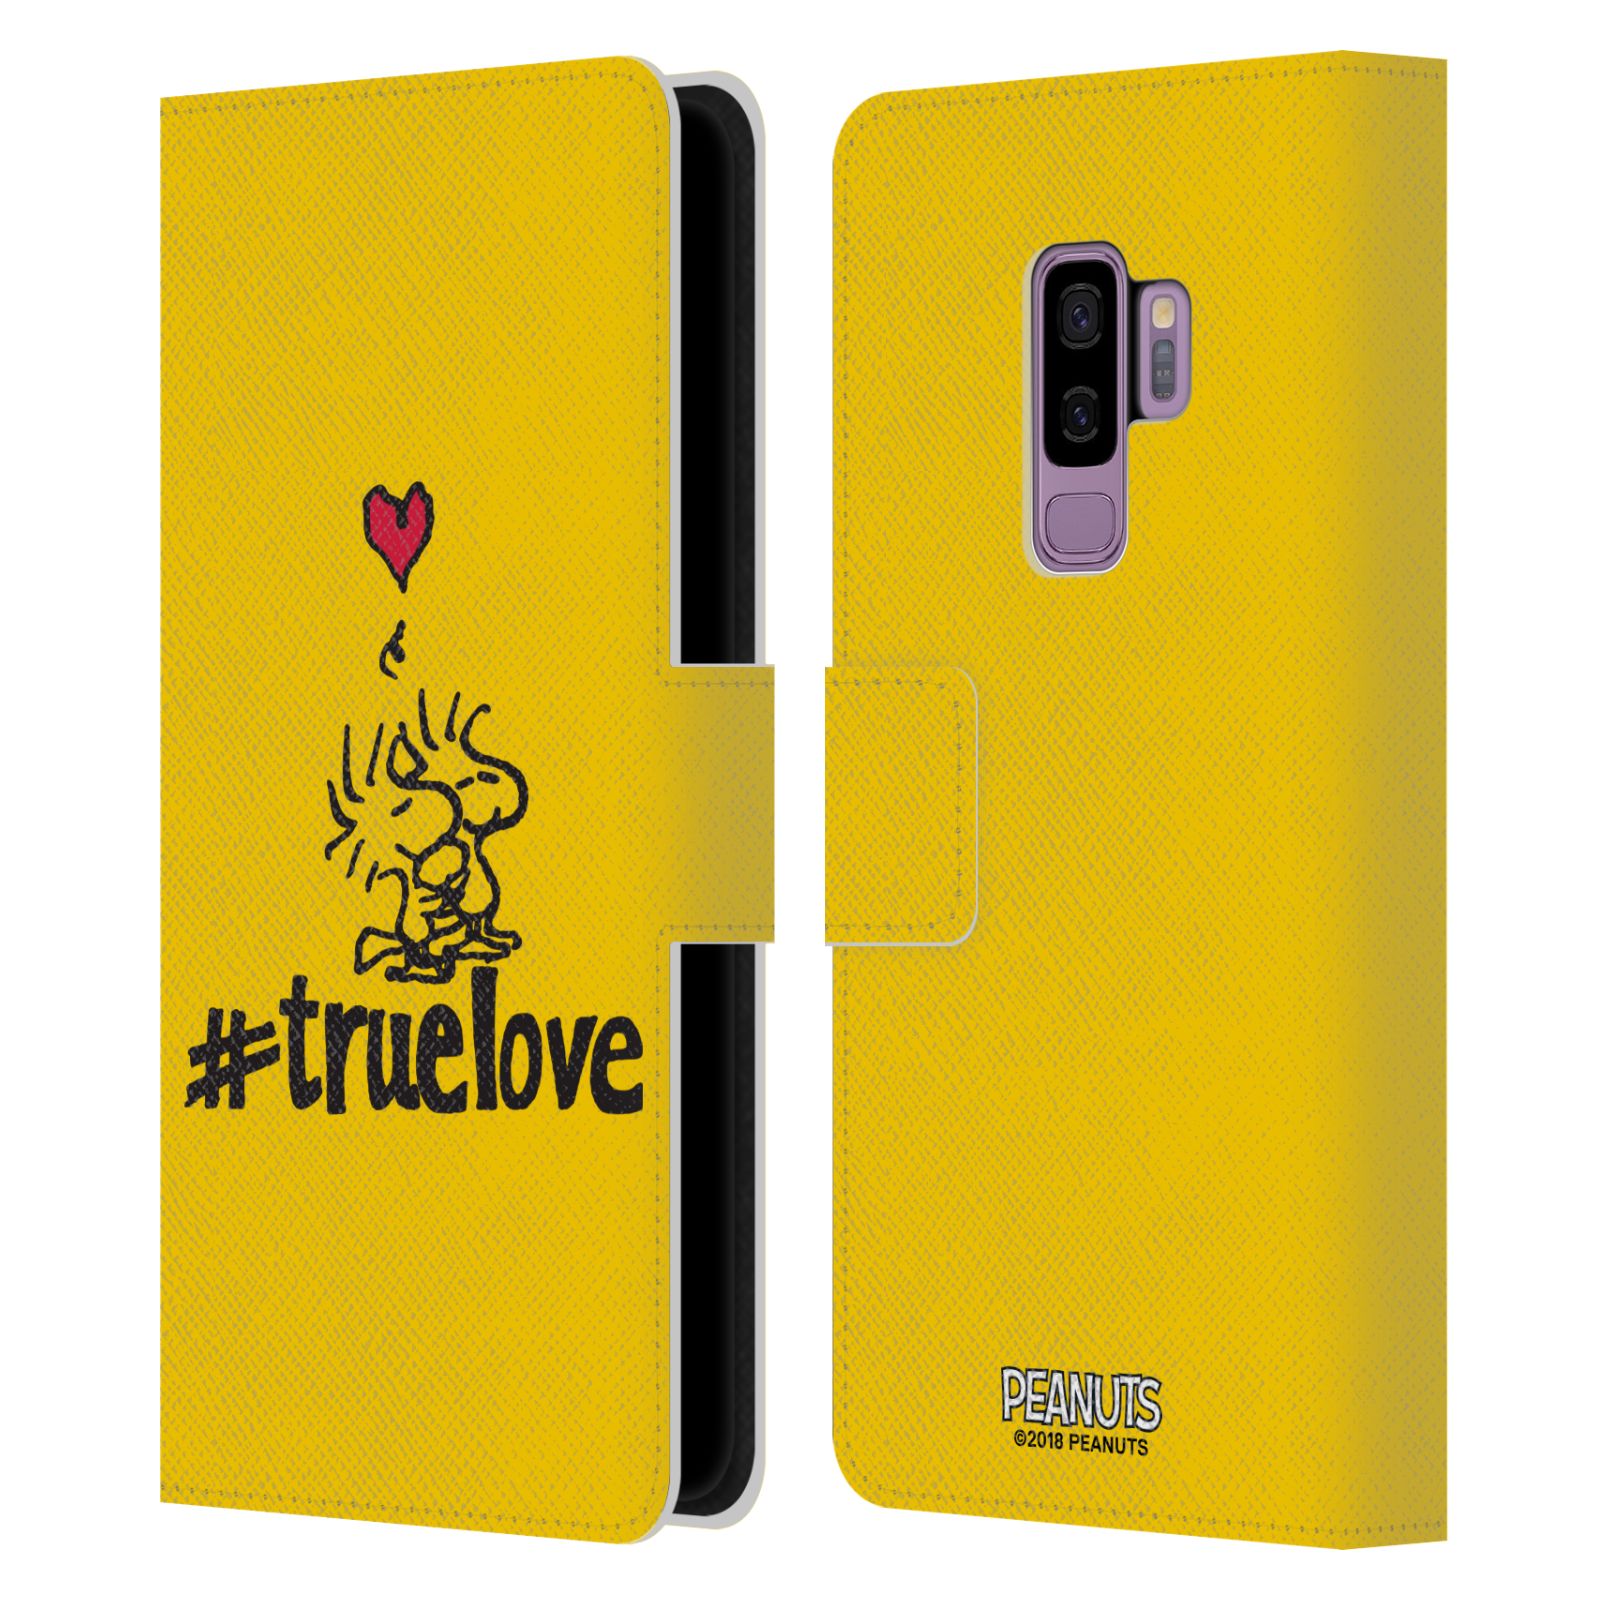 Pouzdro na mobil Samsung Galaxy S9+ / S9 PLUS - HEAD CASE - Peanuts - Woodstock pravá láska